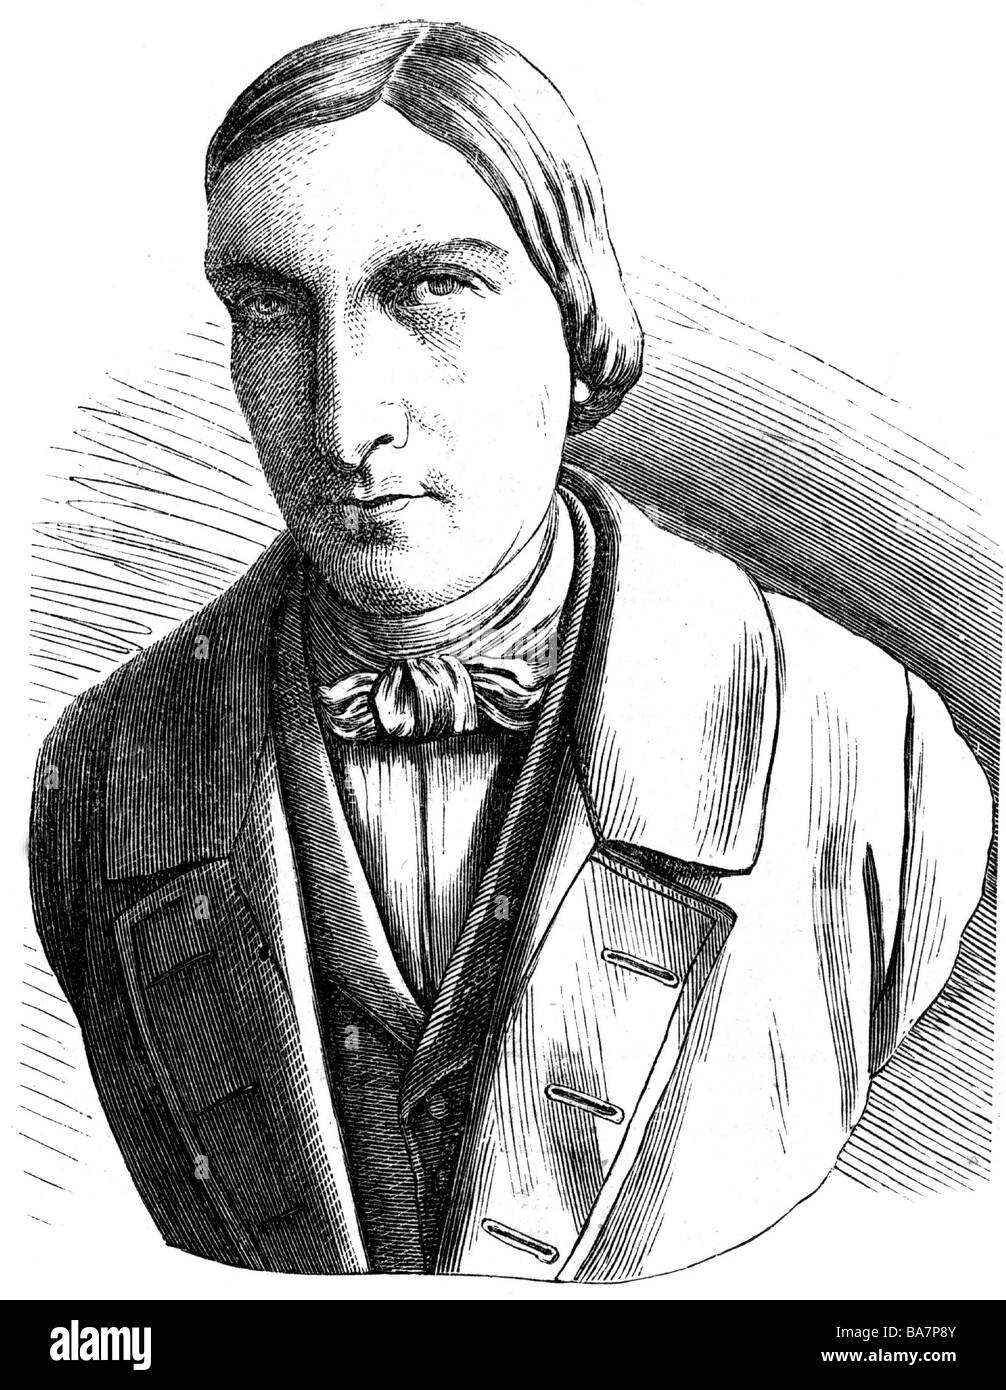 Ressel, Joseph, 29.6.1793 - 10.10.1857, inventore austriaco (dell'elica della nave), ritratto, incisione in legno, 19th secolo, , Foto Stock